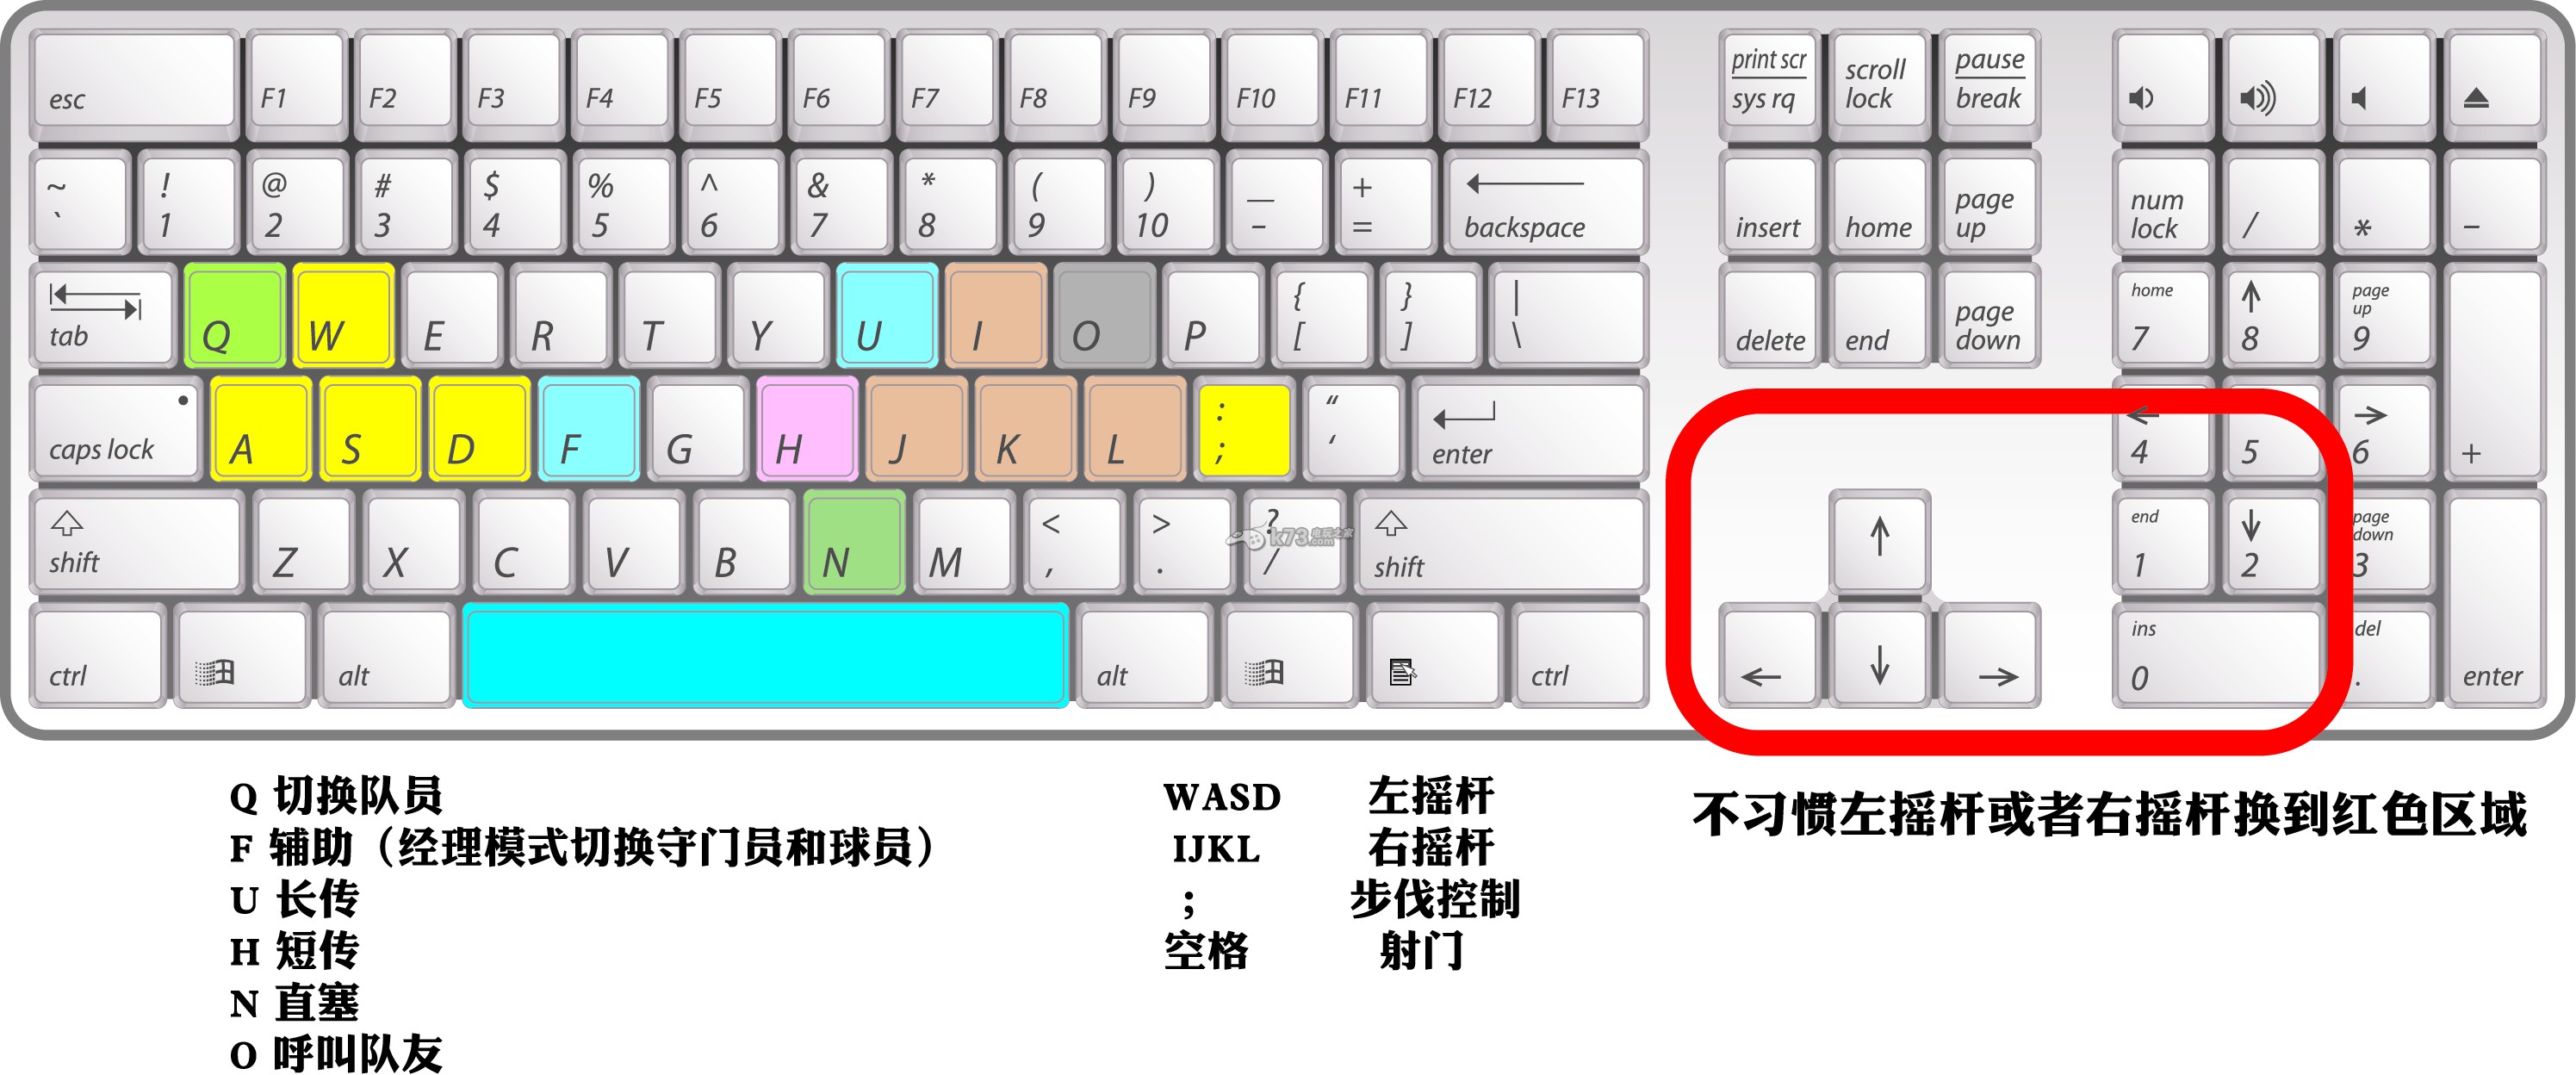 108键盘键位图高清 108机械键盘键位图_108标准键盘键位高清图